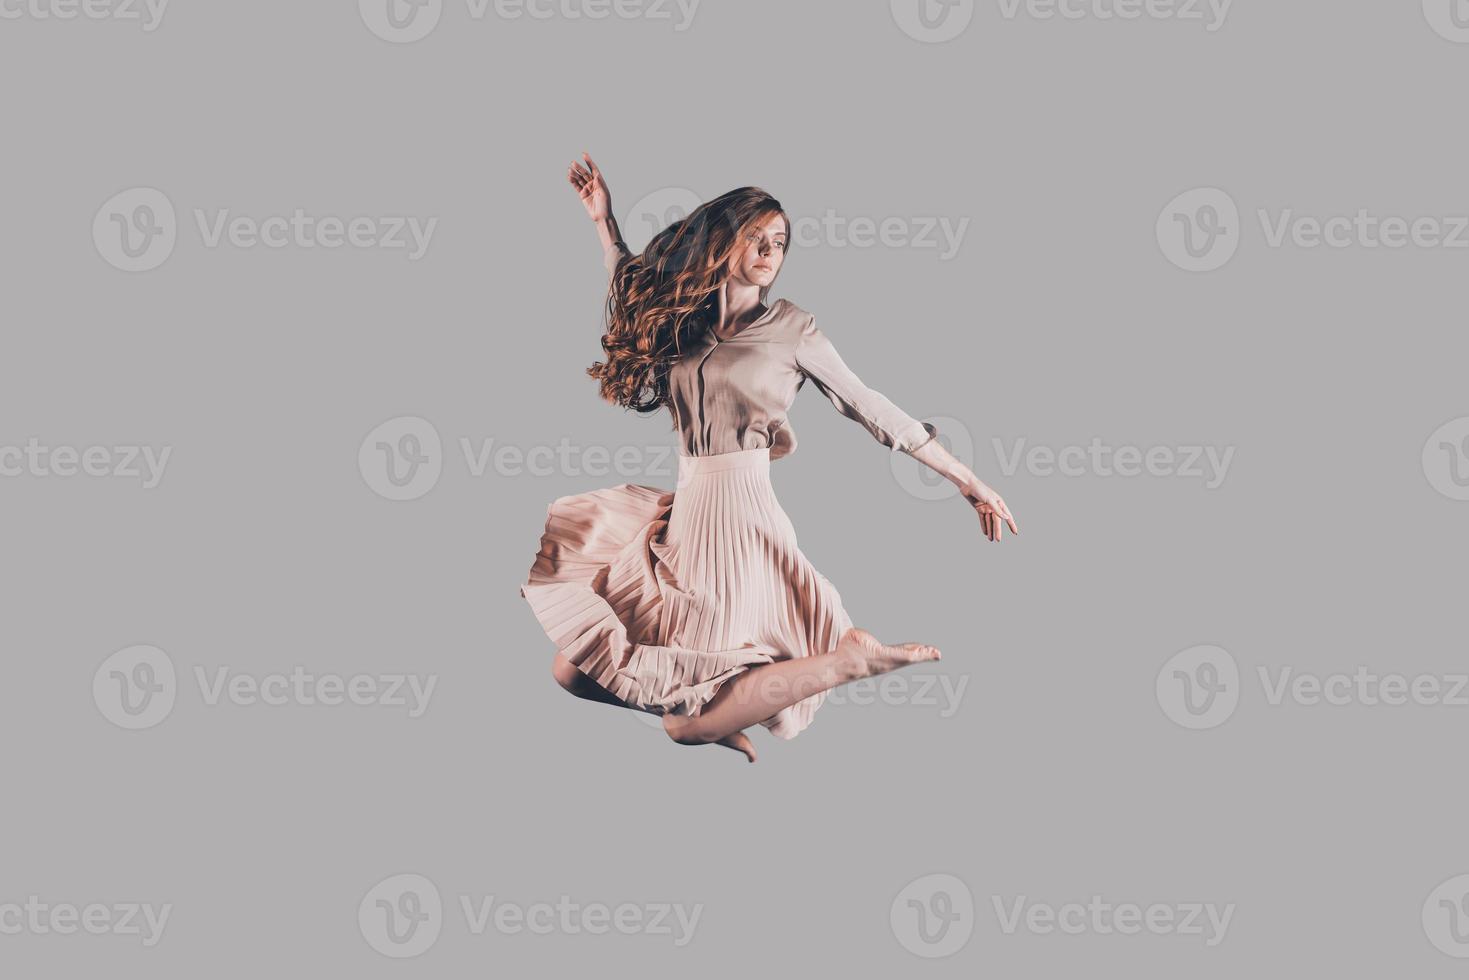 belleza en el aire. foto de estudio de una joven atractiva flotando en el aire